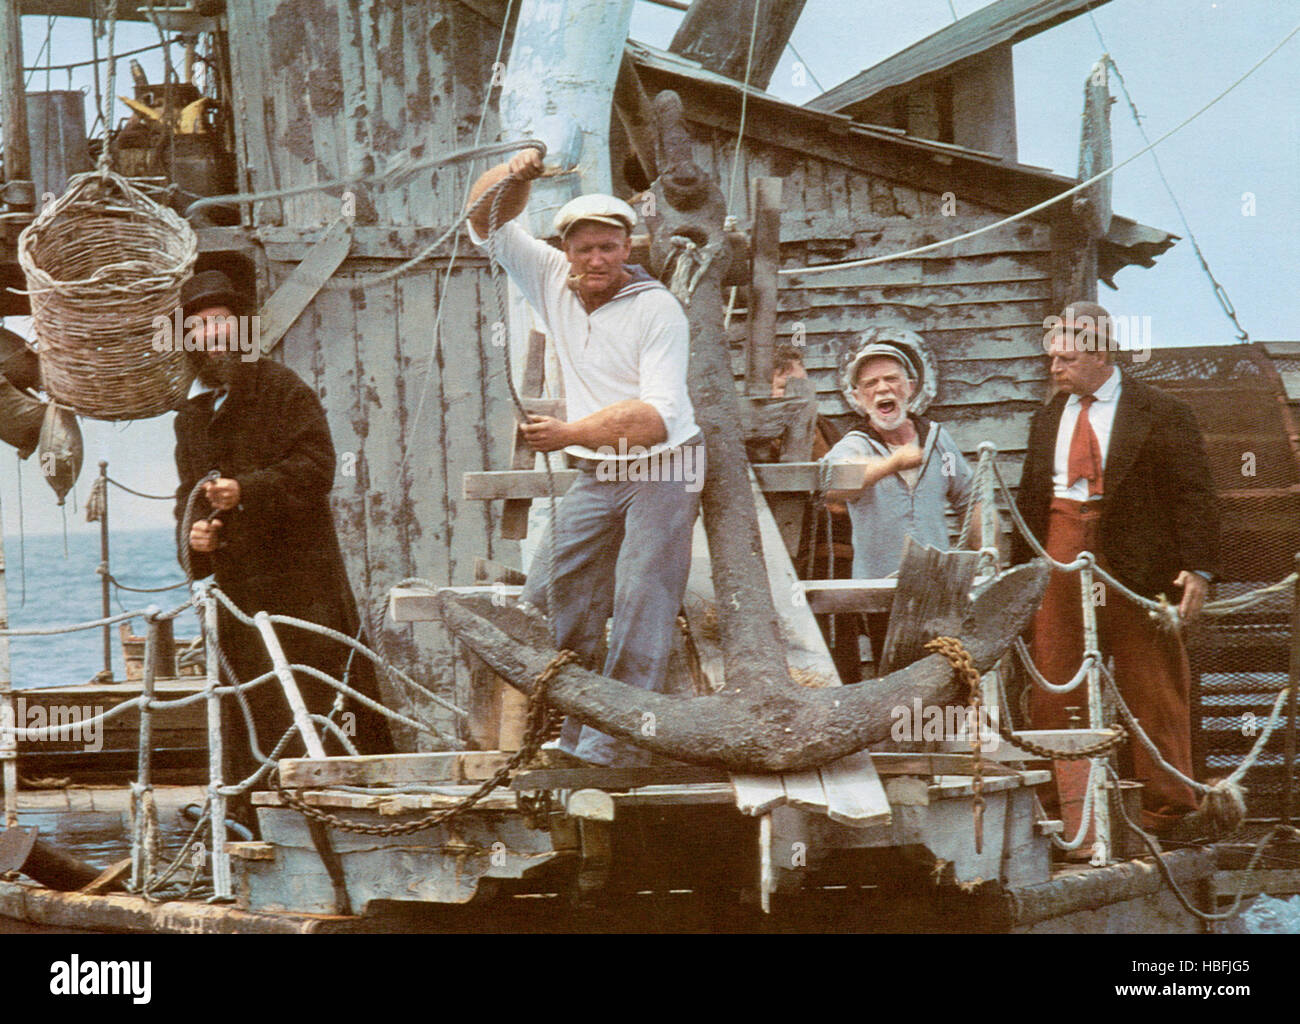 POPEYE, Richard Libertini, Robin Williams, Ray Walston, Paul Dooley, 1980, (c) Paramount/Höflichkeit Everett Collection Stockfoto